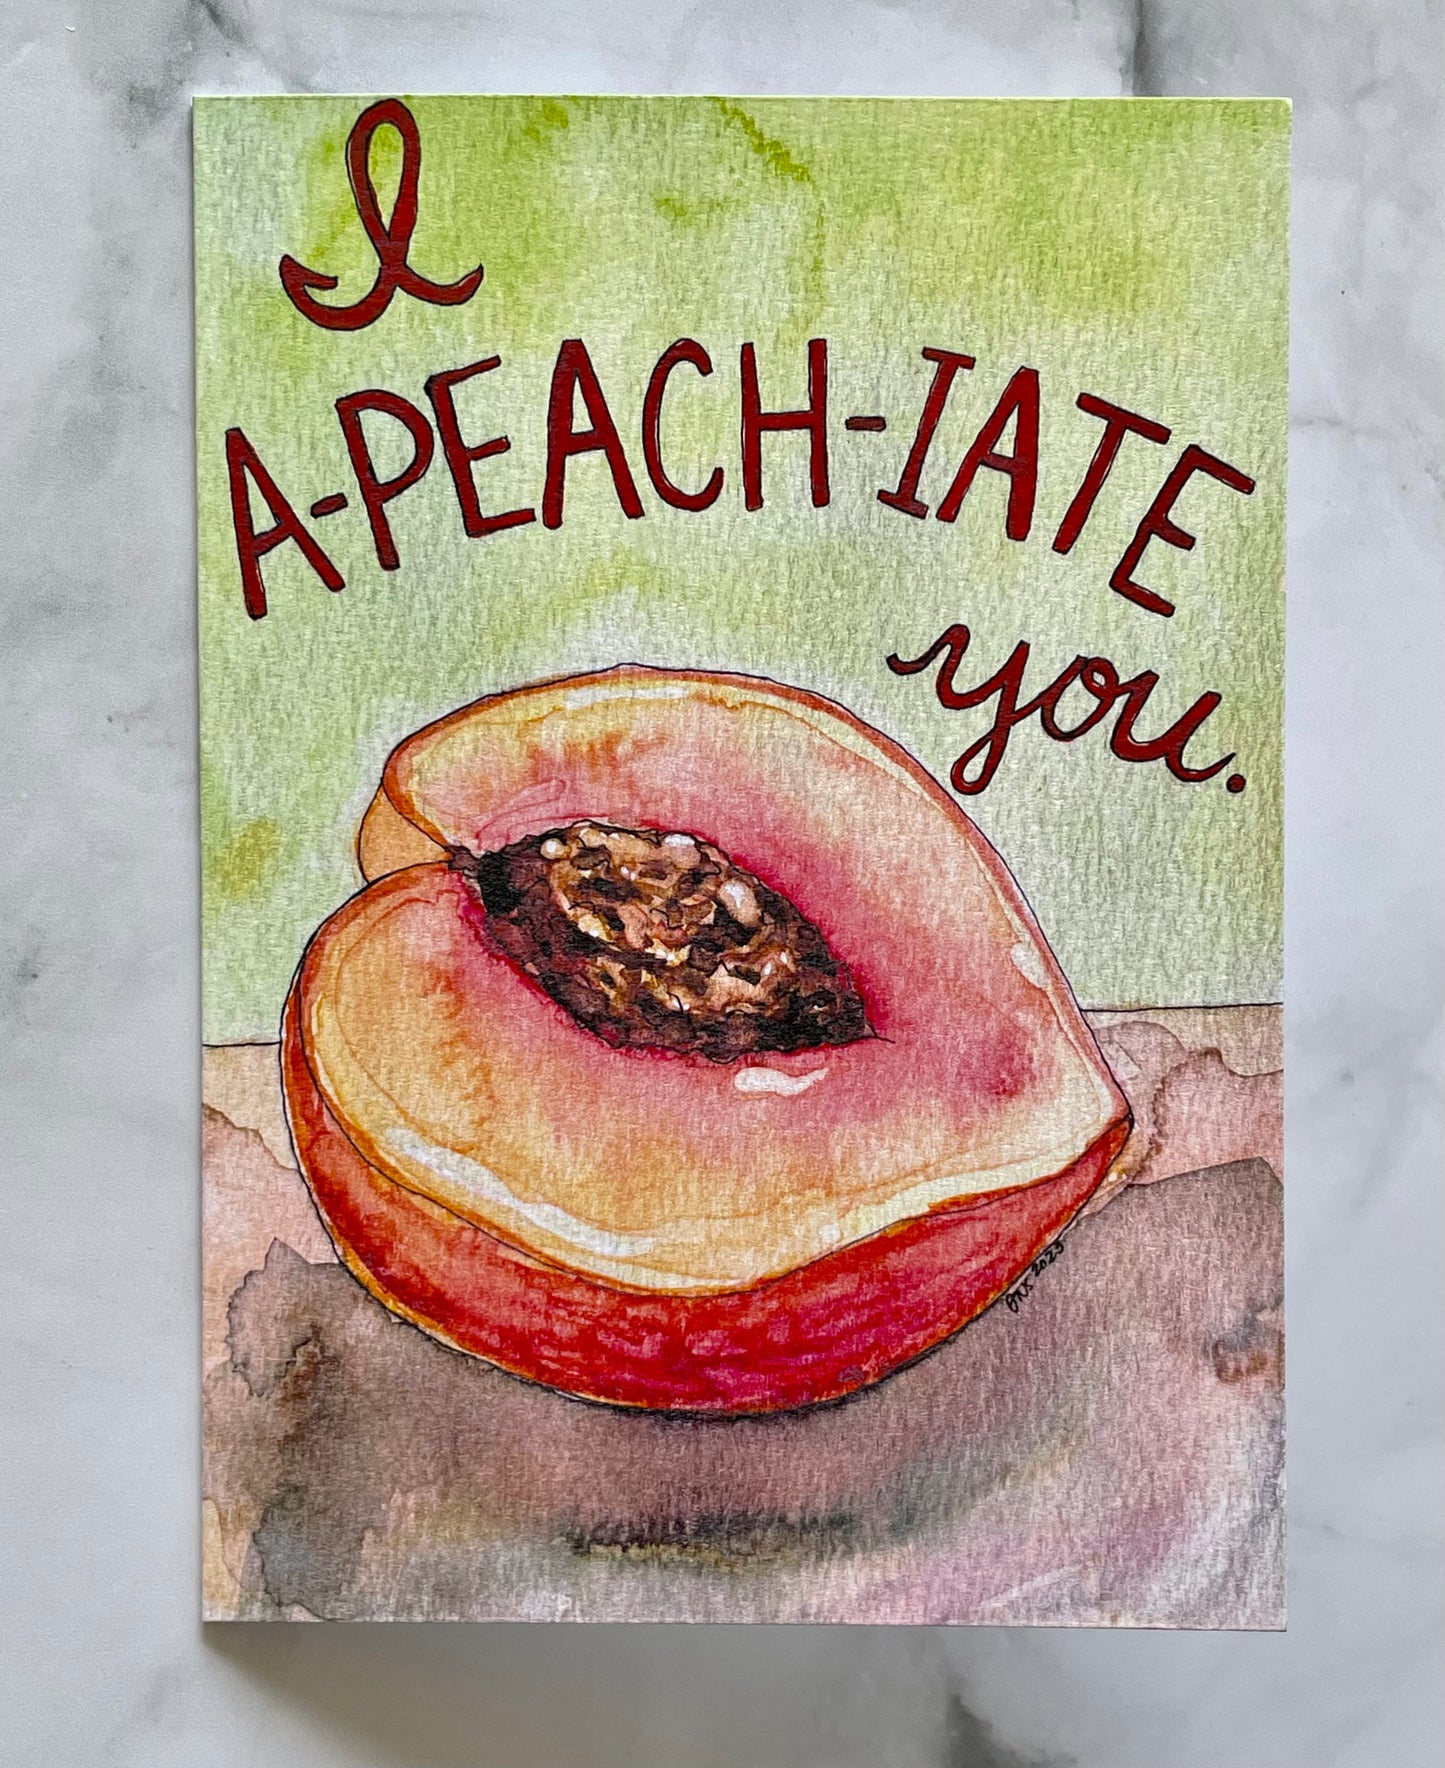 I A-peach-iate You Card